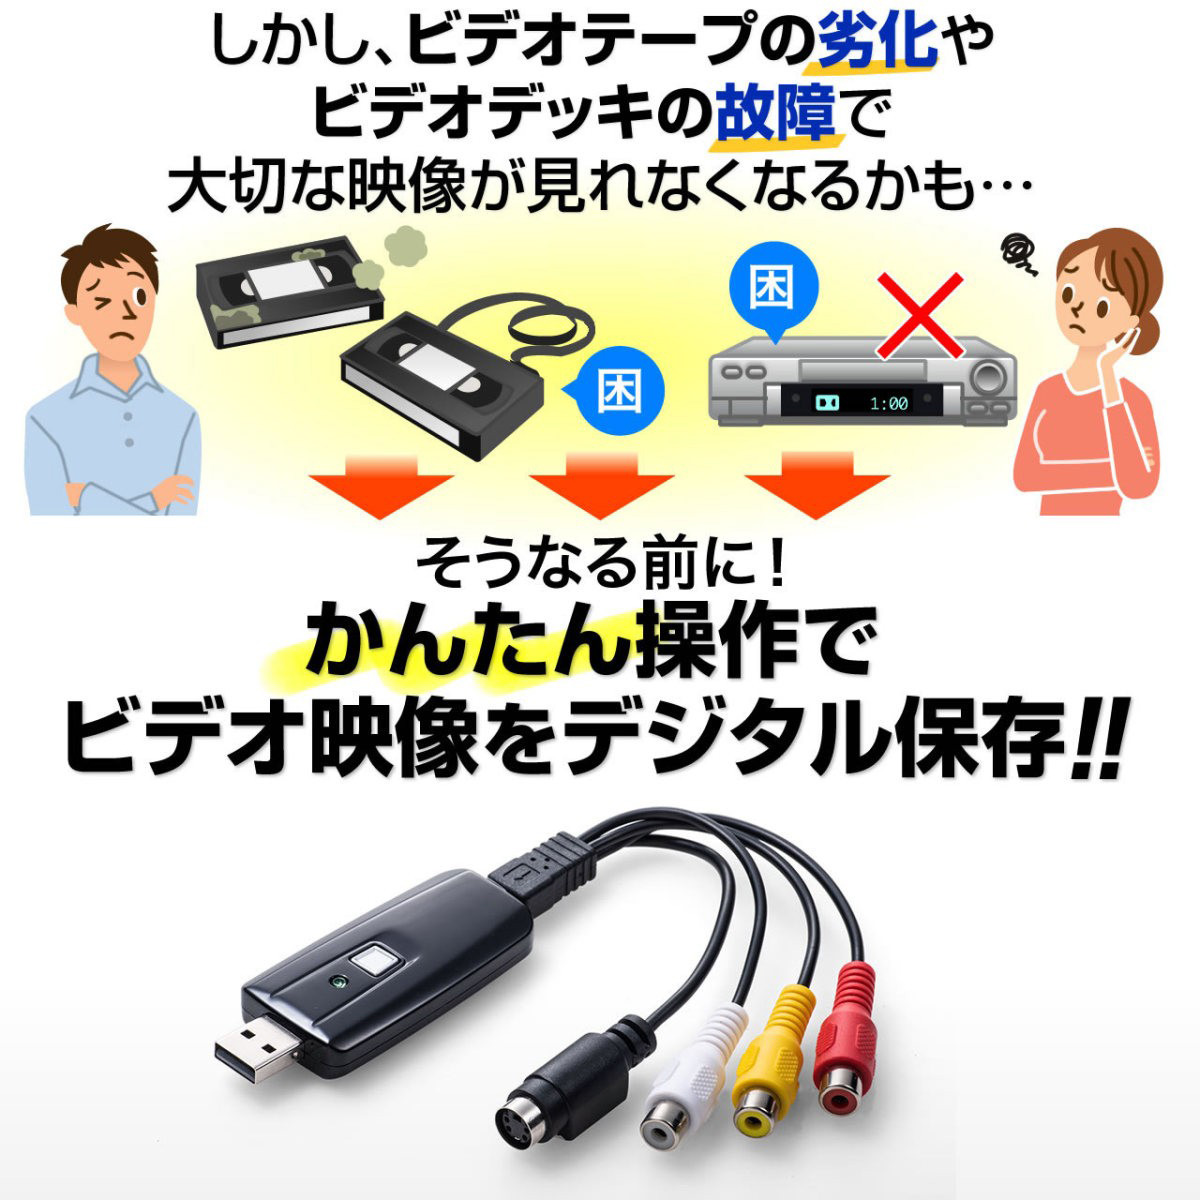 USBビデオキャプチャー VHSテープや8mmビデオテープをダビングしてデジタル化 DVDに保存 専用ソフト付き 400-MEDI008